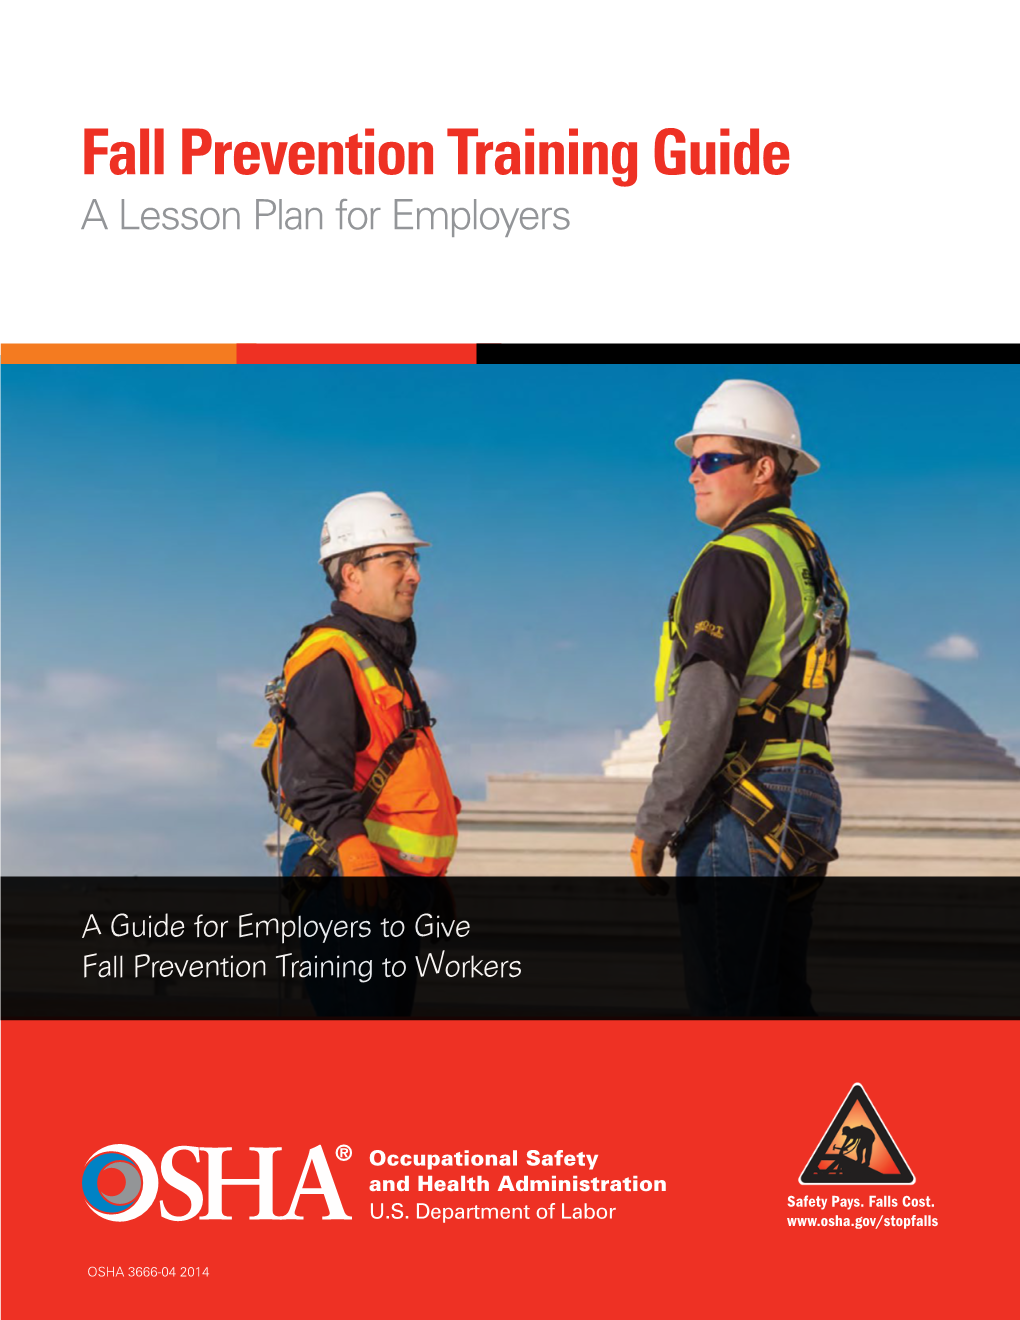 OSHA Fall Prevention Training Guide